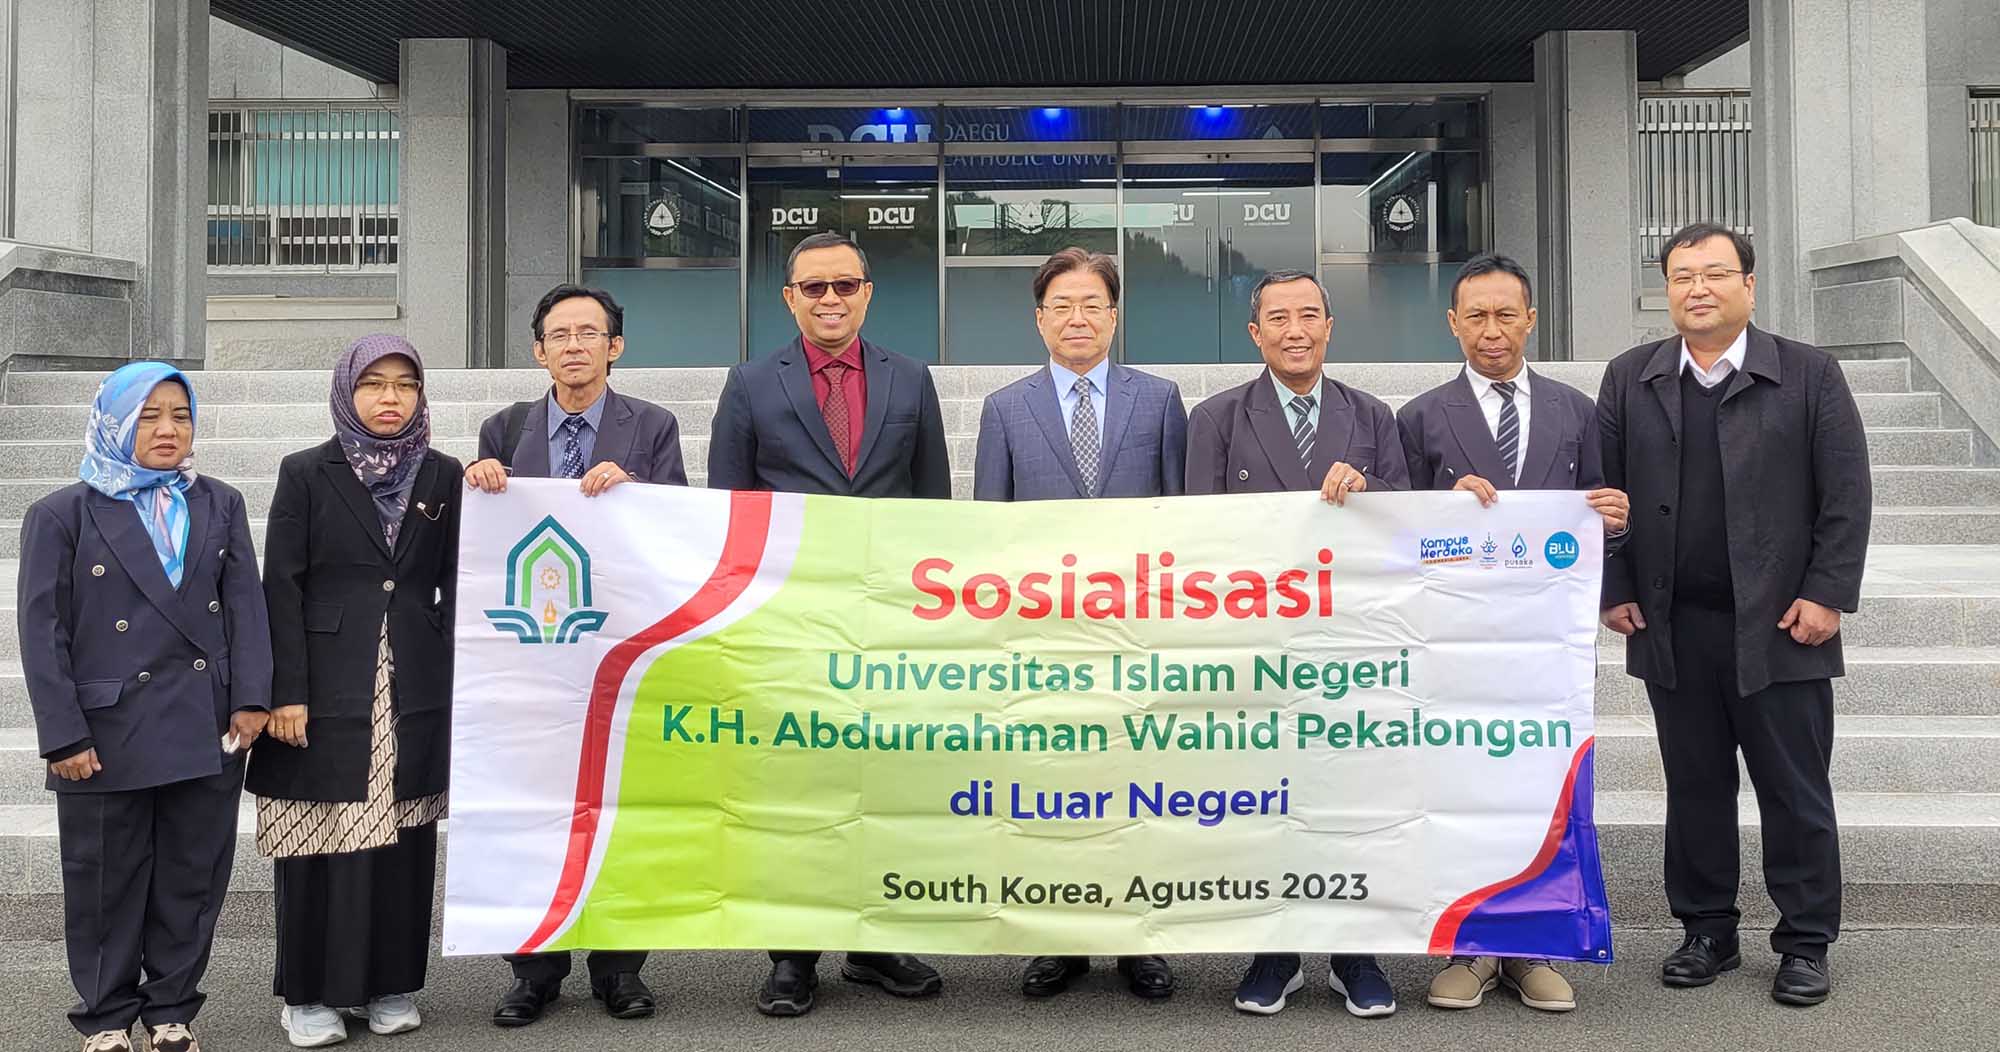 인도네시아 K.H. 압두라흐만 와히드 페칼롱간 이슬람 국립 대학(UIN) 총장단 방문